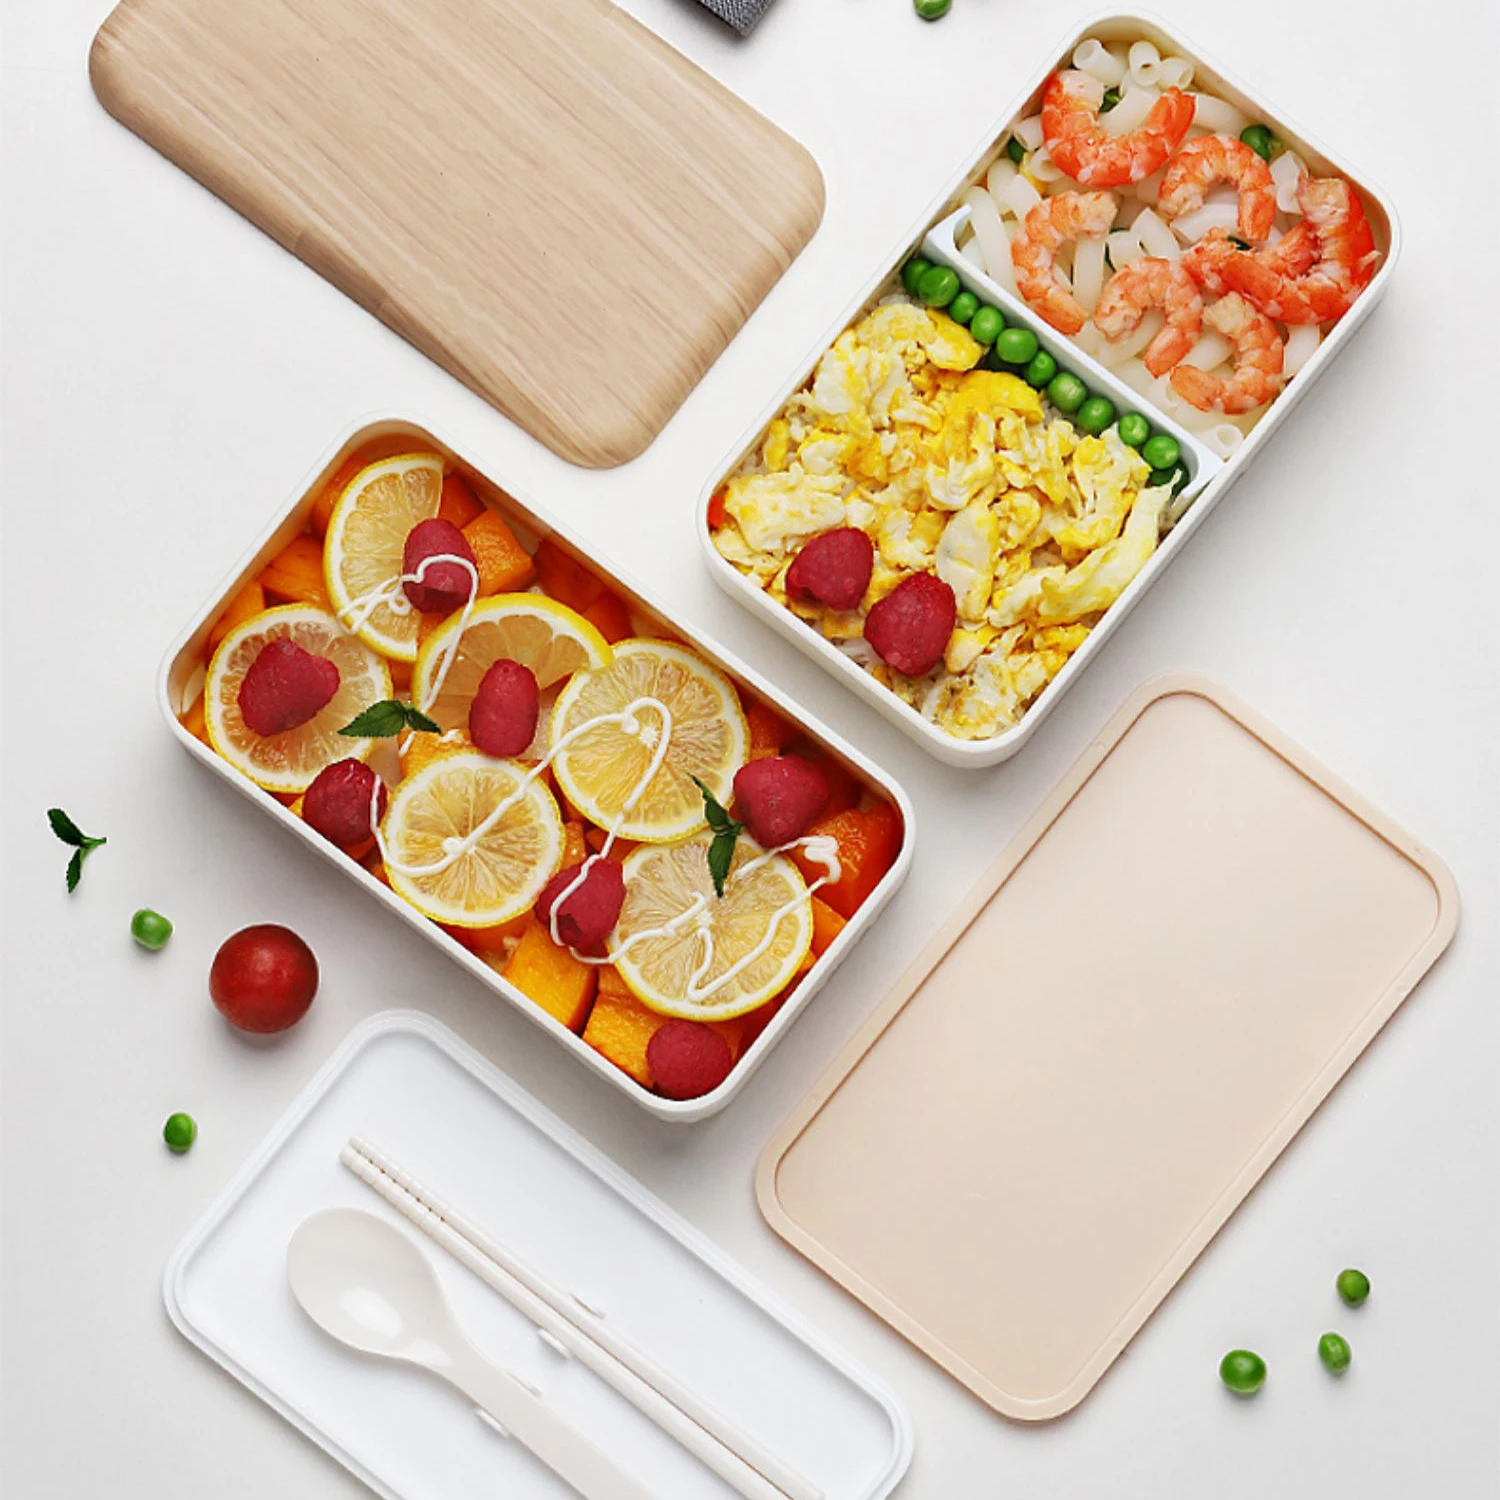 Compart Мужская t Bento коробка ланч-боксы с ложкой палочки для еды, BPA бесплатно контейнер для хранения еды путешествия-упаковка для мужчин, женщин, взрослых